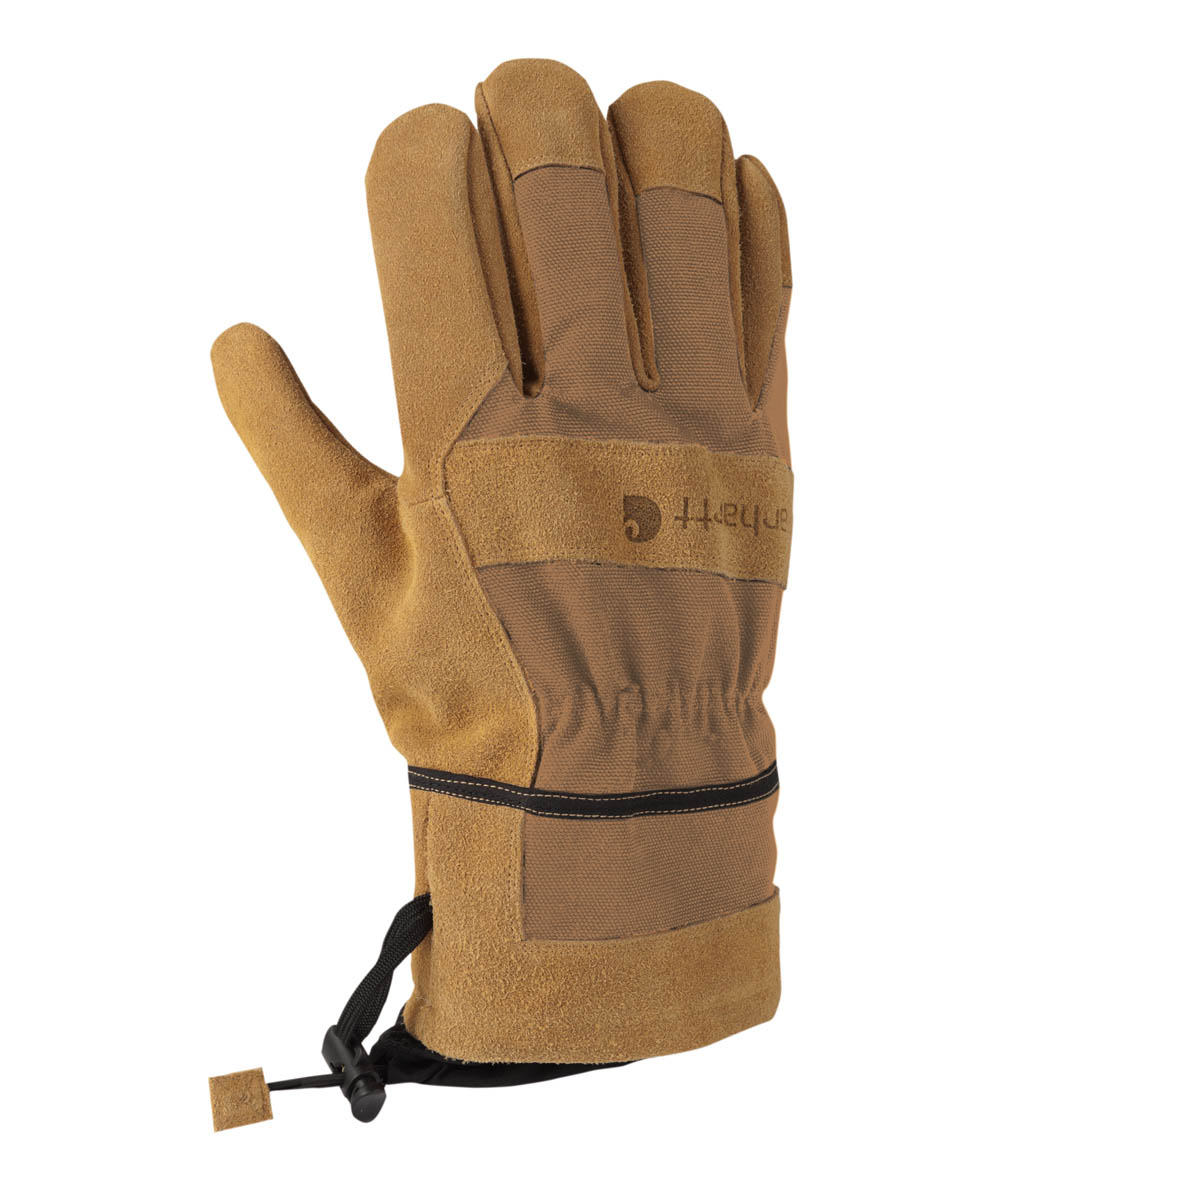 Carhartt Men's Dozer Glove Safety Cuff Gauntlet Discontinued Pricing